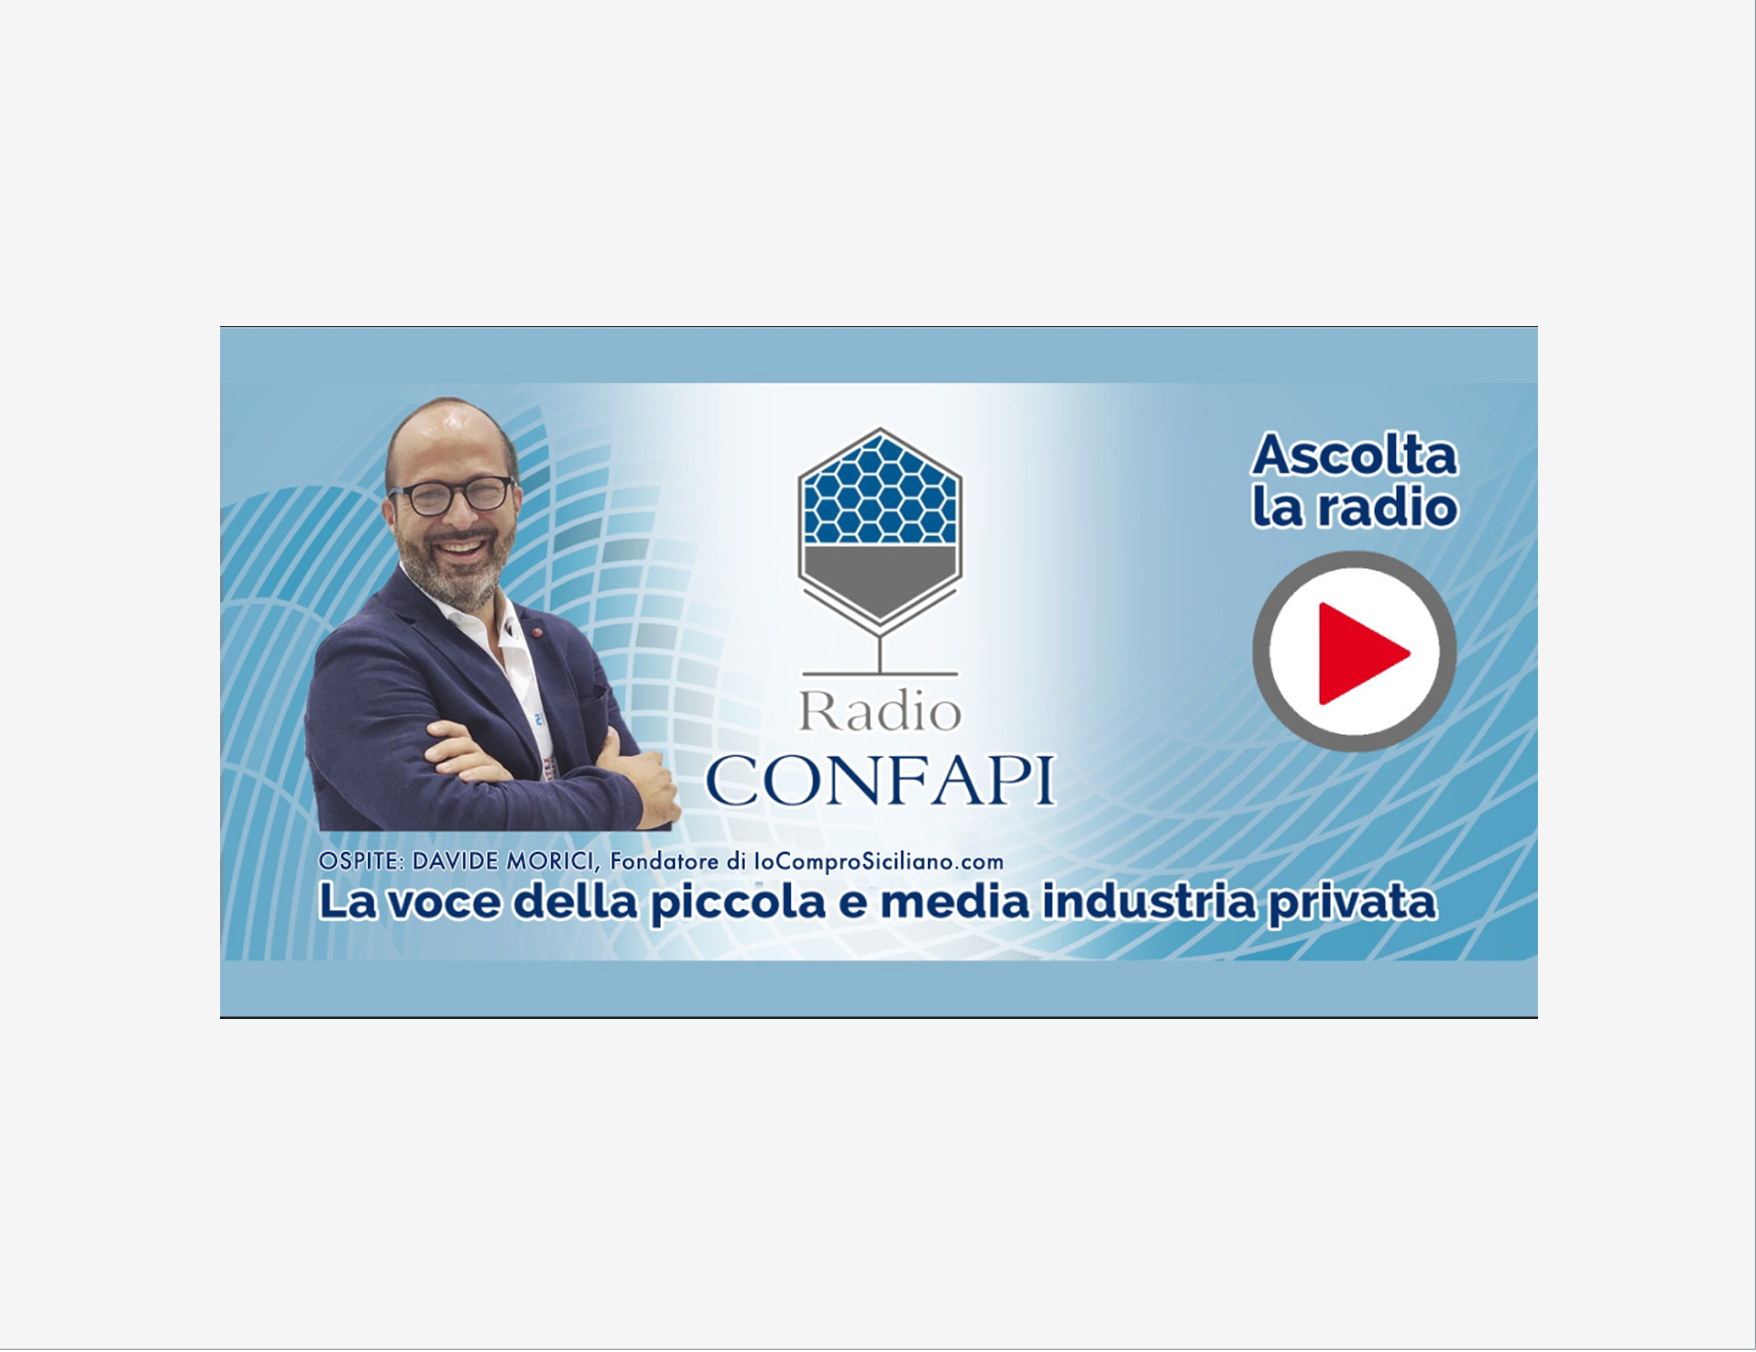 Al momento stai visualizzando 27 aprile ore 8.05, Davide Morici, fondatore di IoComproSiciliano.com su Radio Confapi